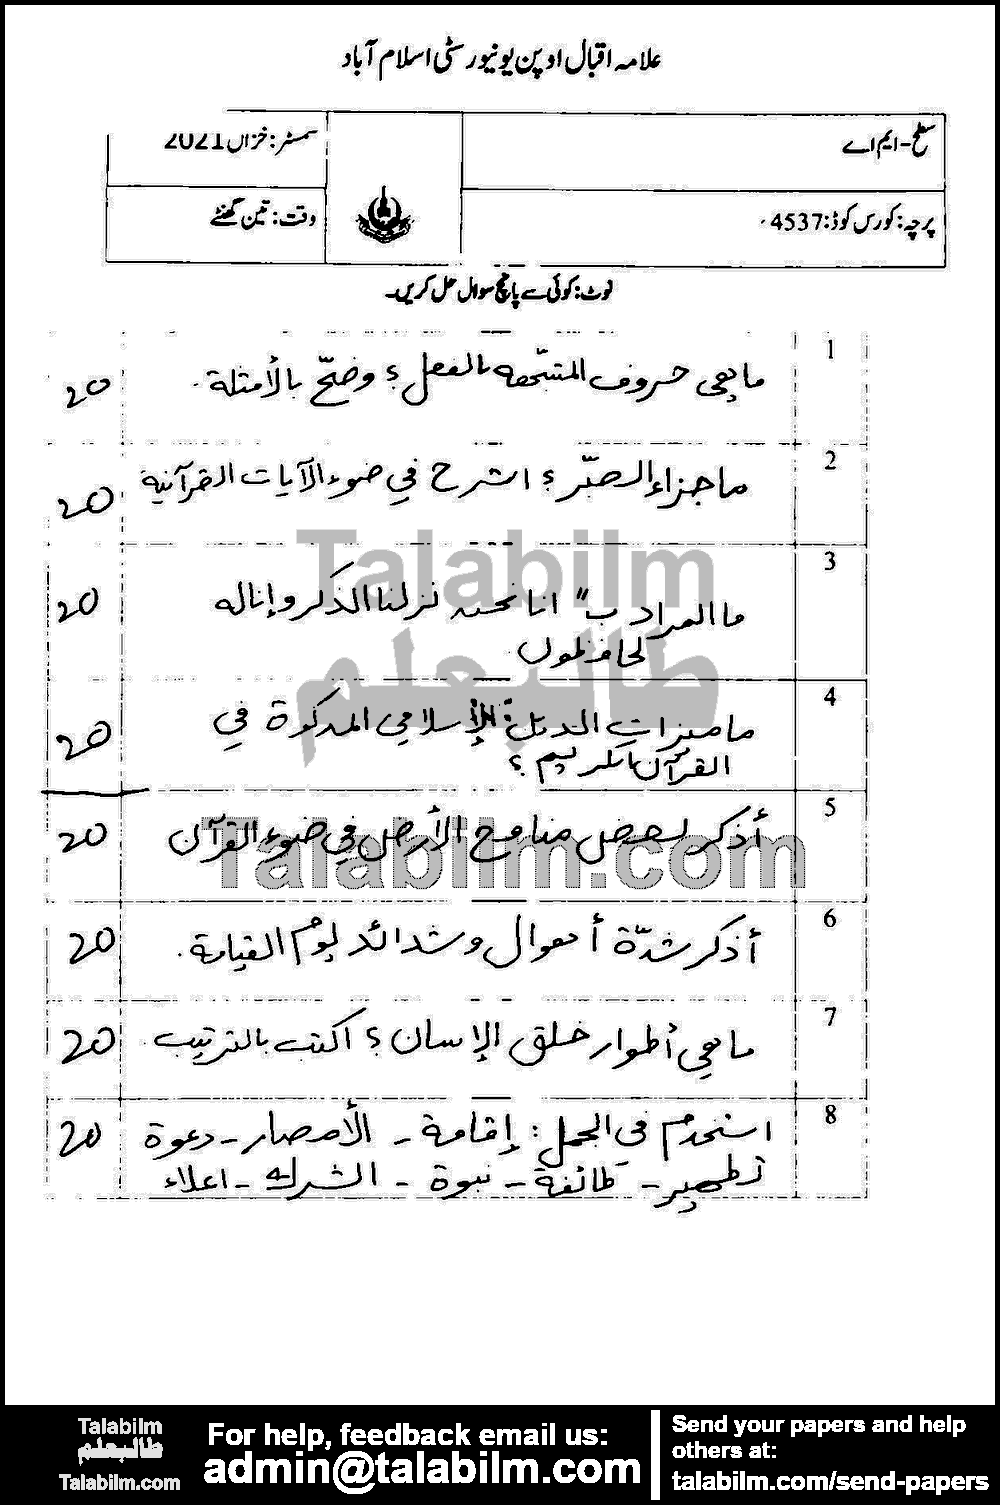 Religious Literature (Quran) 4537 past paper for Autumn 2021